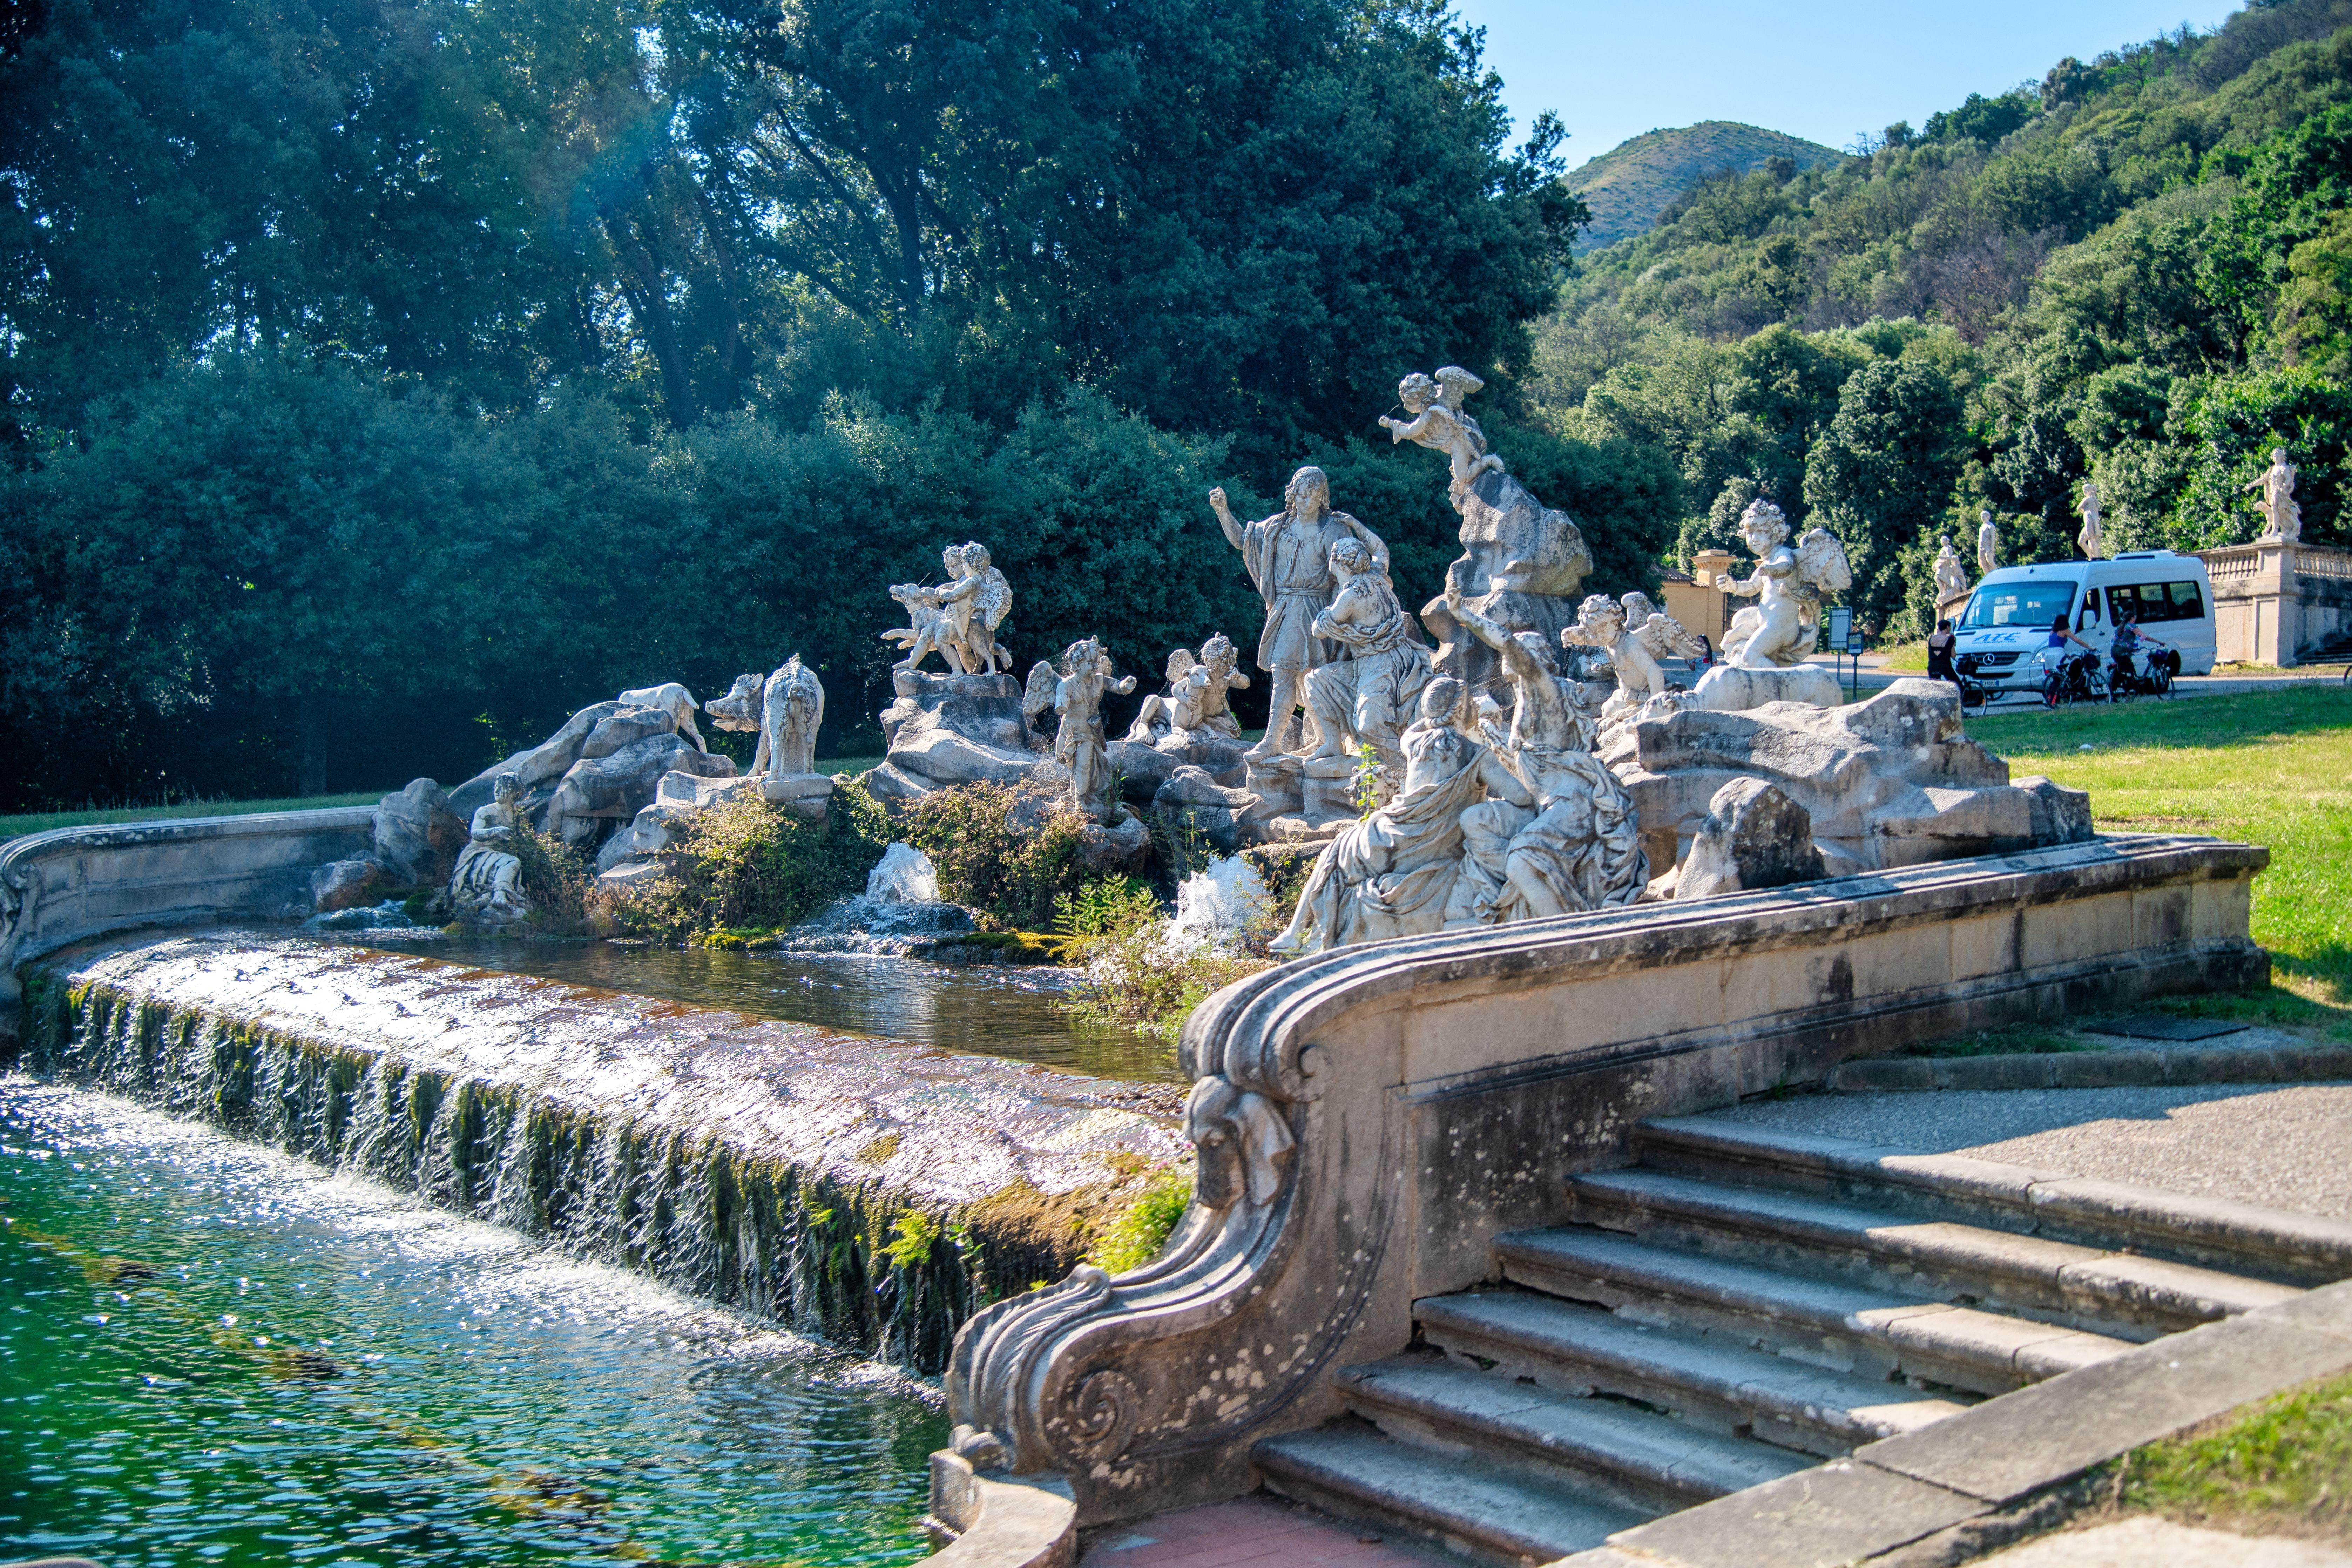 The Fountains of Reggia di Caserta